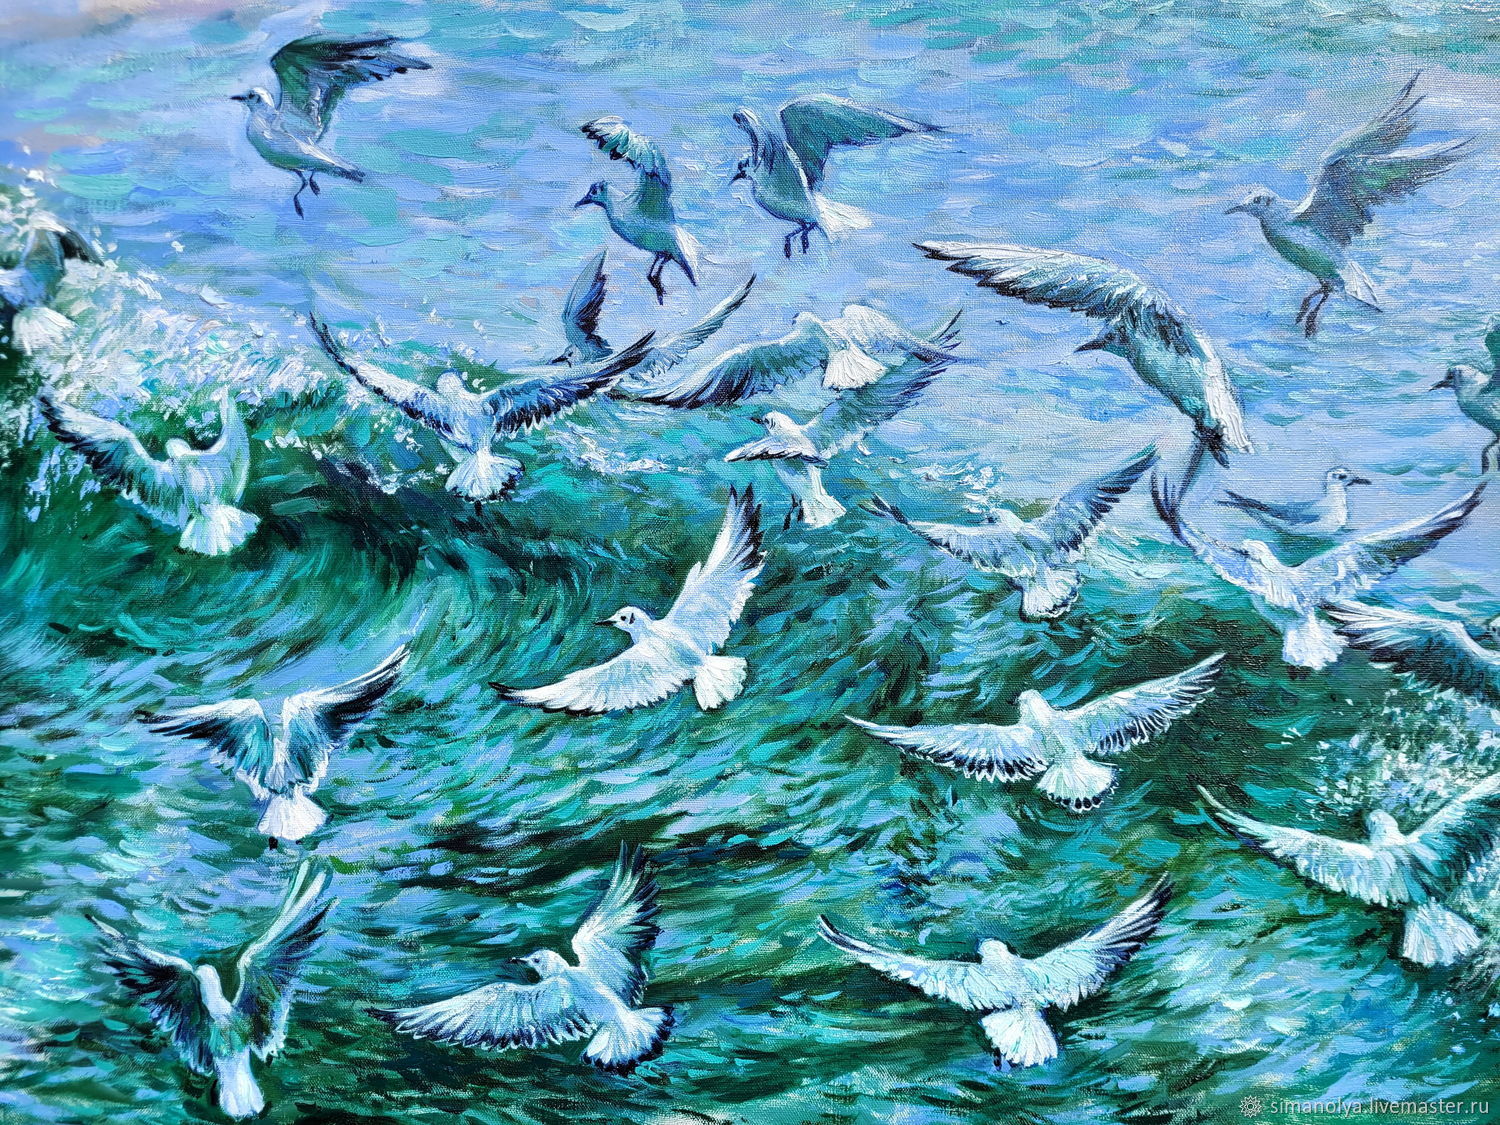 Чайки над морем летят! (Ковалёв Александр Павлович) / irhidey.ru